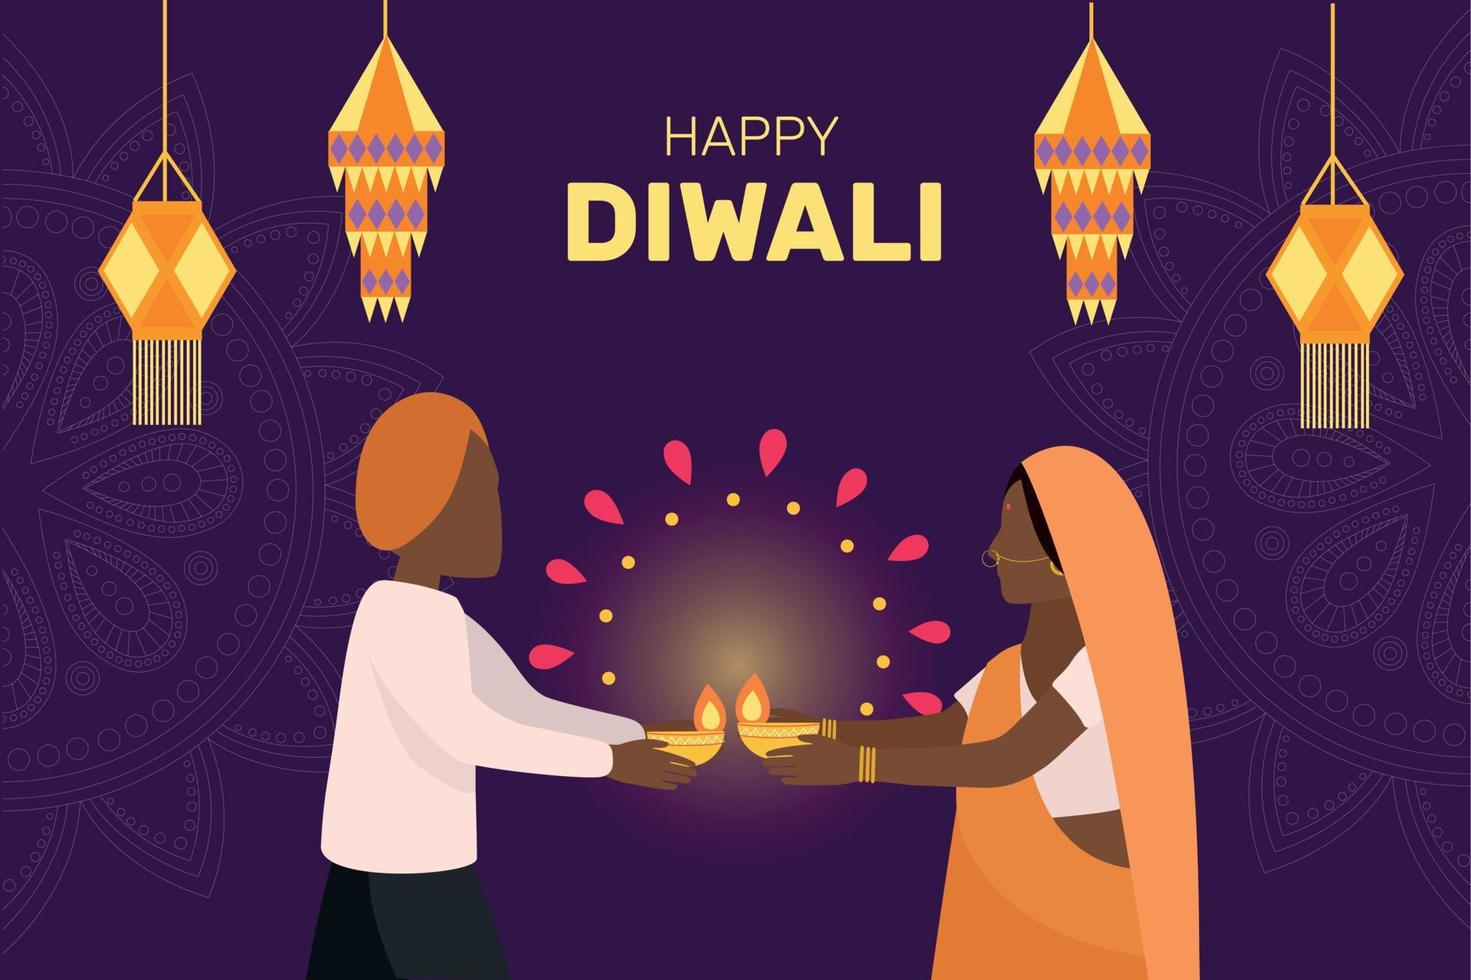 un hombre con ropa tradicional india y una mujer con un sari naranja sostienen lámparas de aceite iluminadas. linternas del cielo y mandala en el fondo. sari naranja. felices vacaciones de diwali. vector